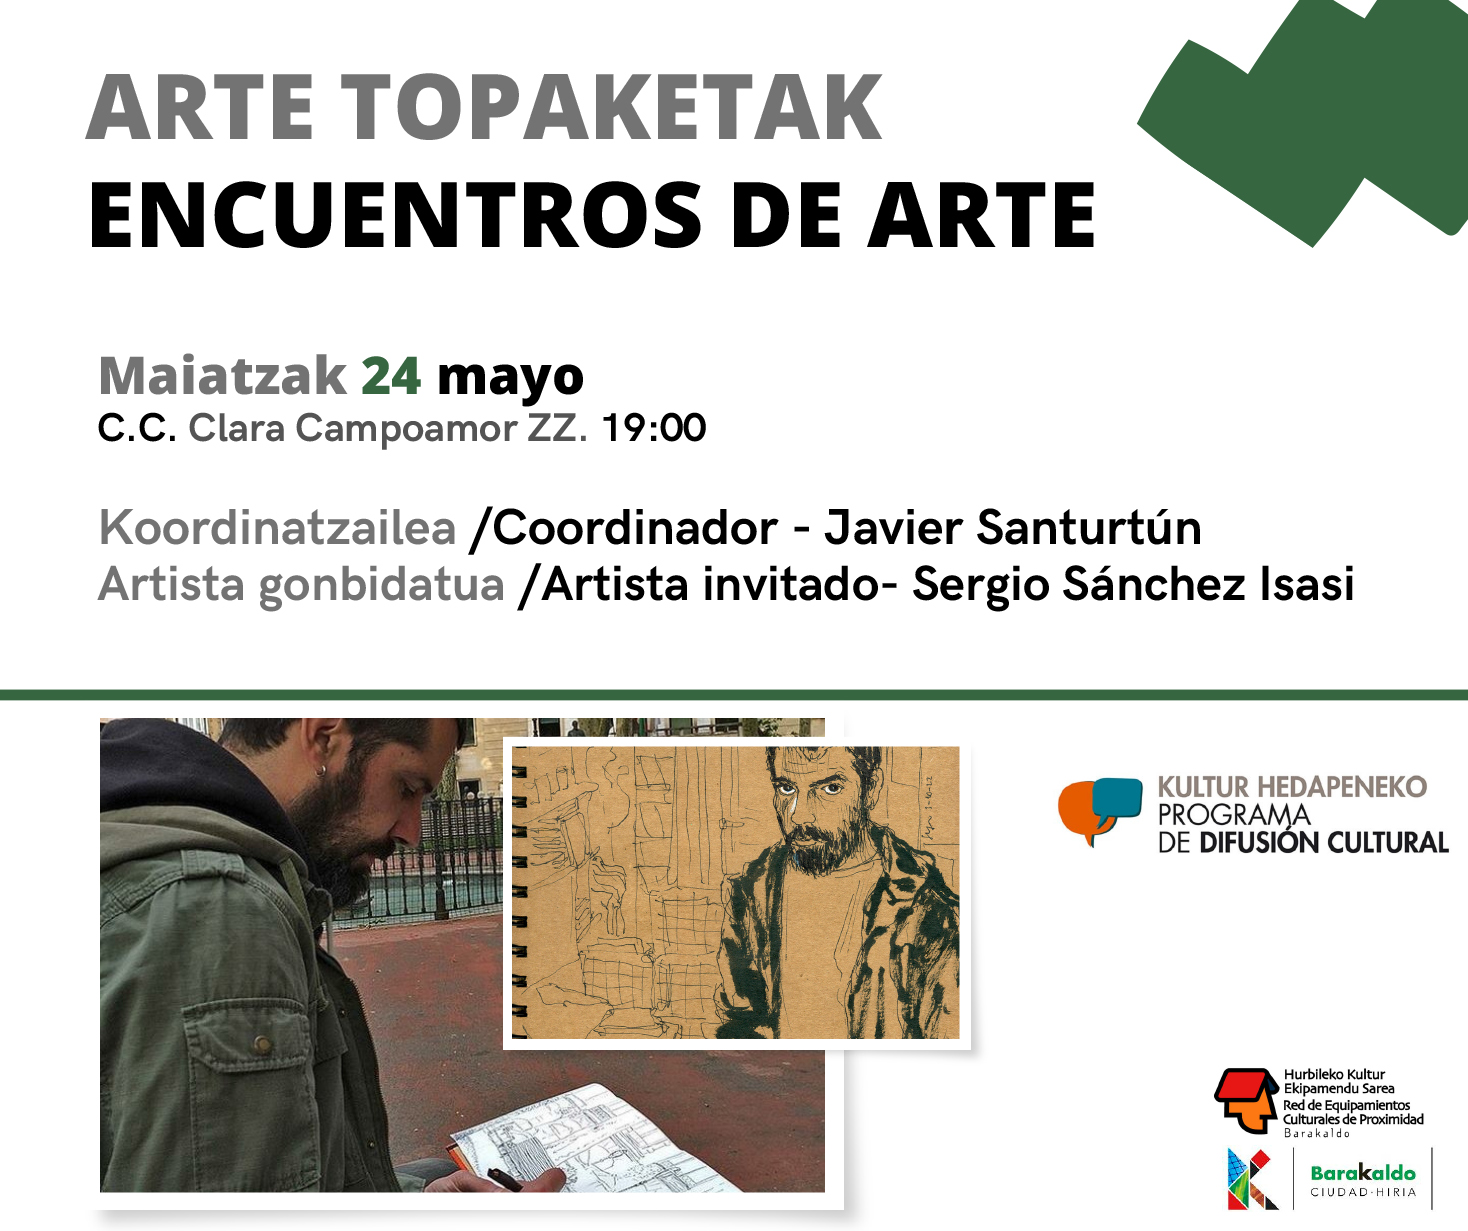 Encuentros de Arte topaketak: Sergio Sánchez Isasi